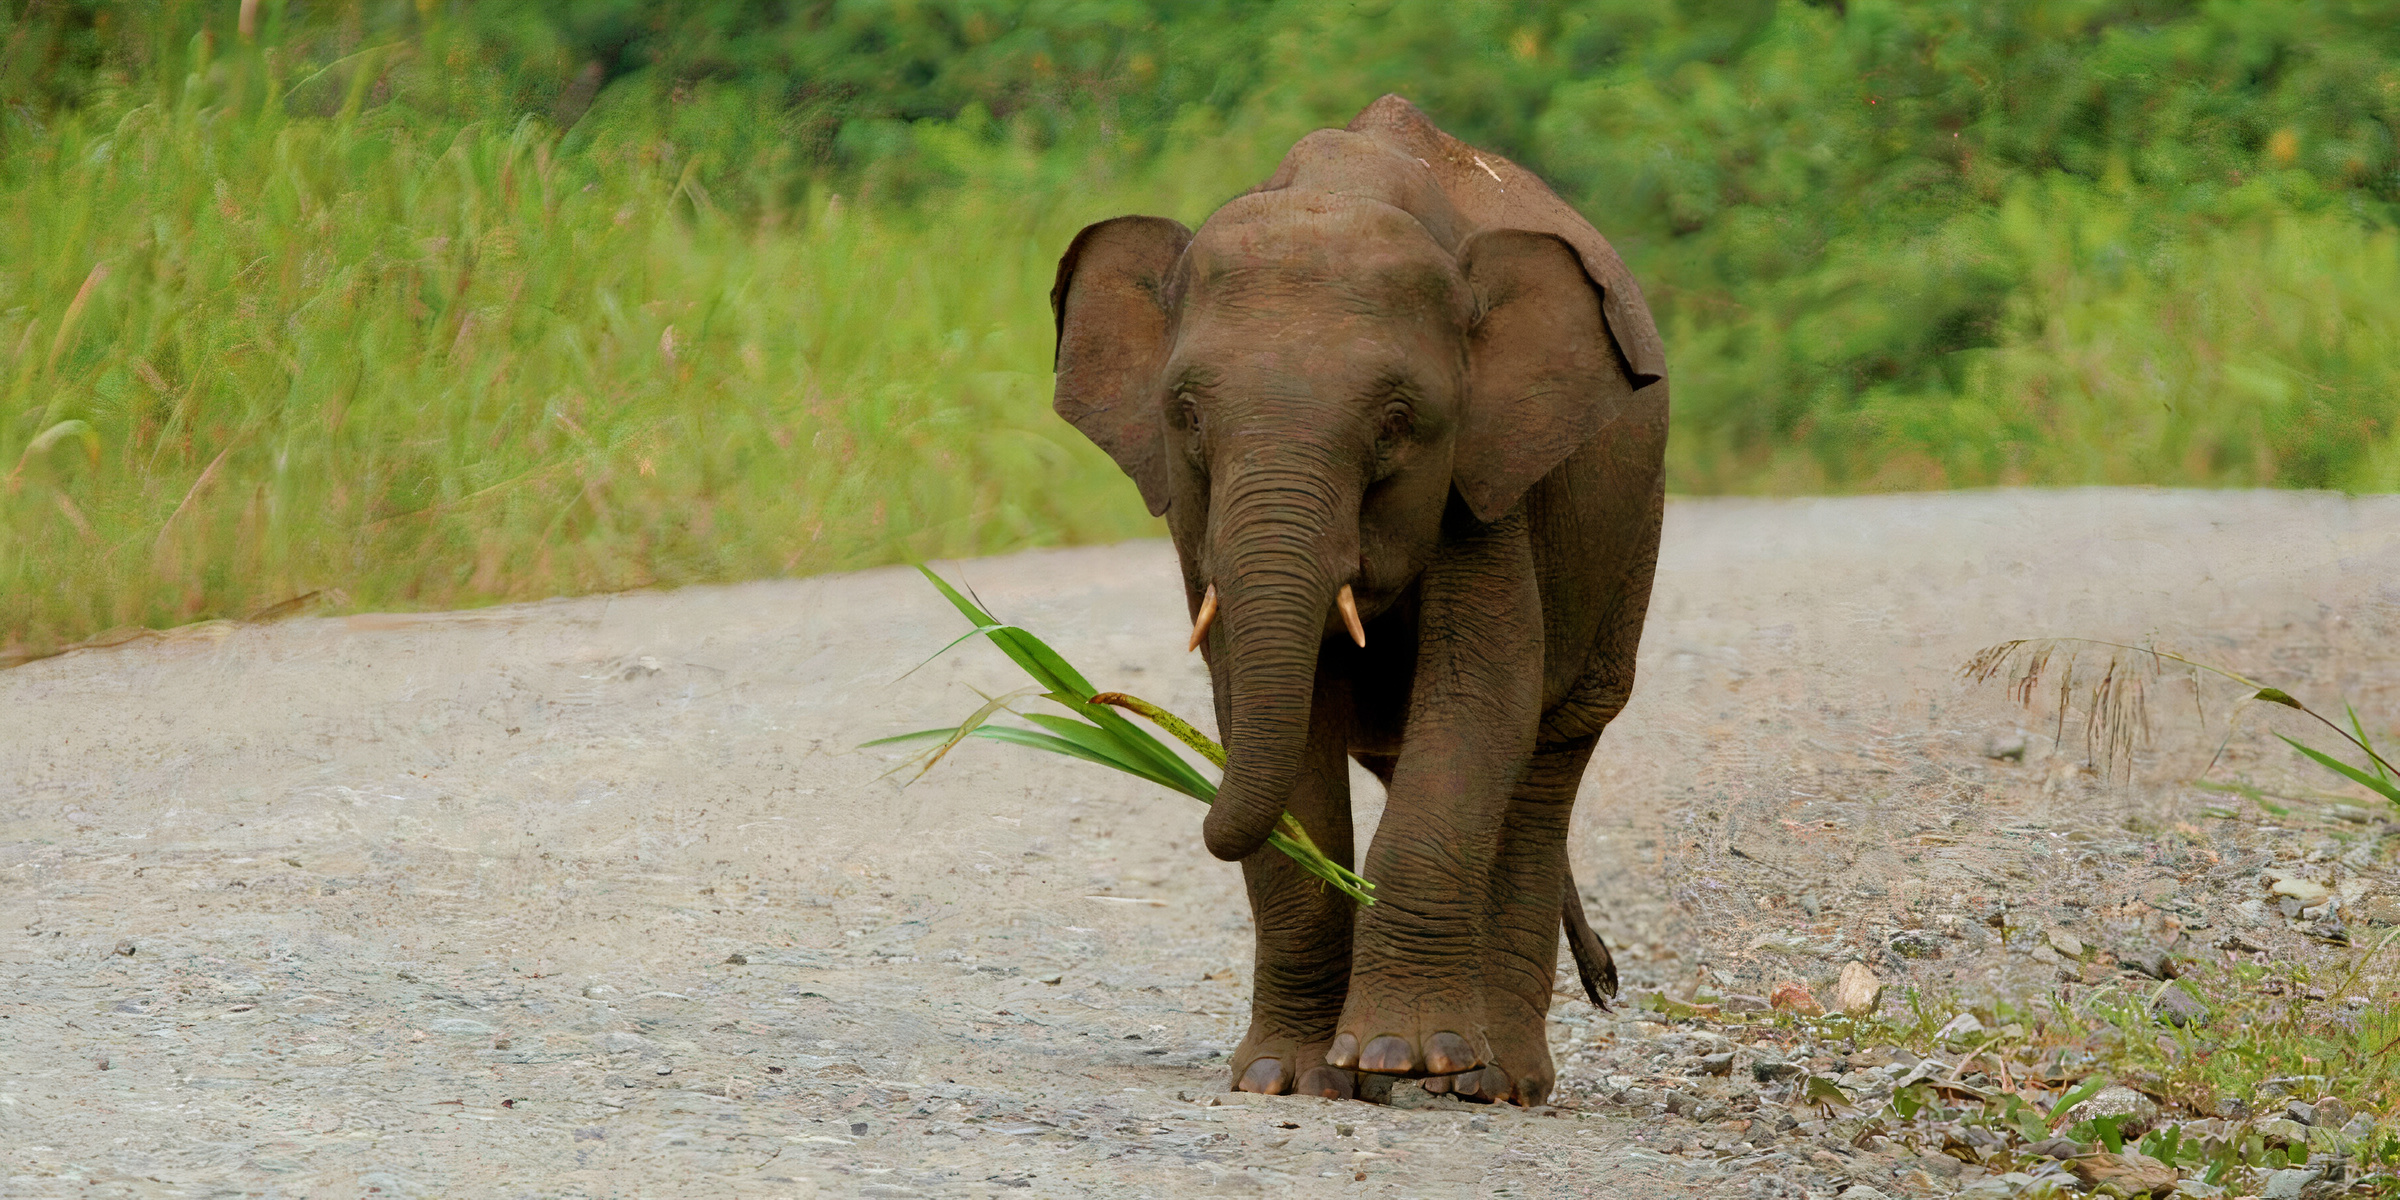 A baby pygmy elephant relishing the vegetation.